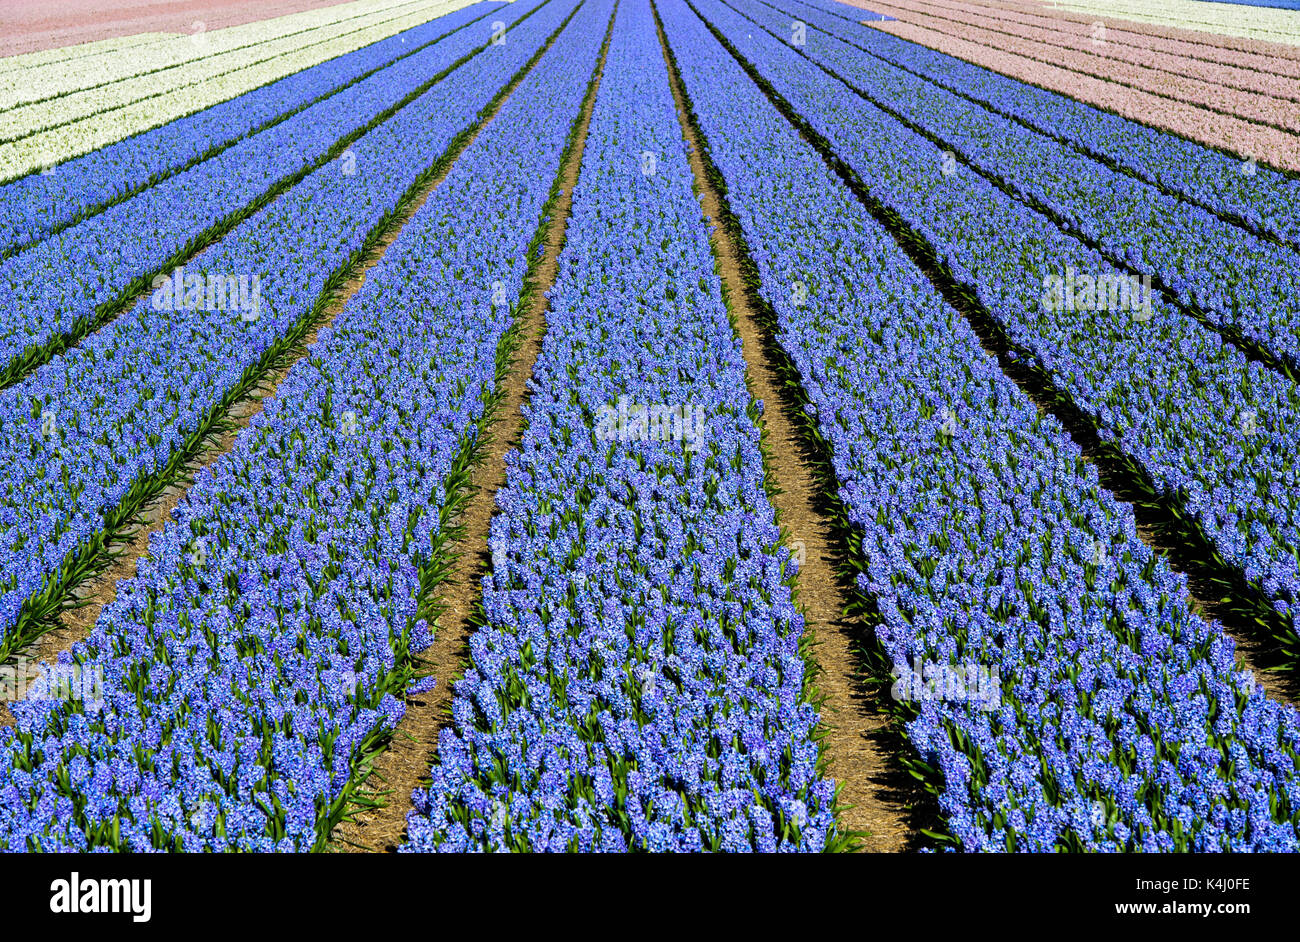 Cultivation of blue Grape hyacinth (Muscari), Production of flower bulbs, flower bulb region Bollenstreek, Noordwijkerhout Stock Photo